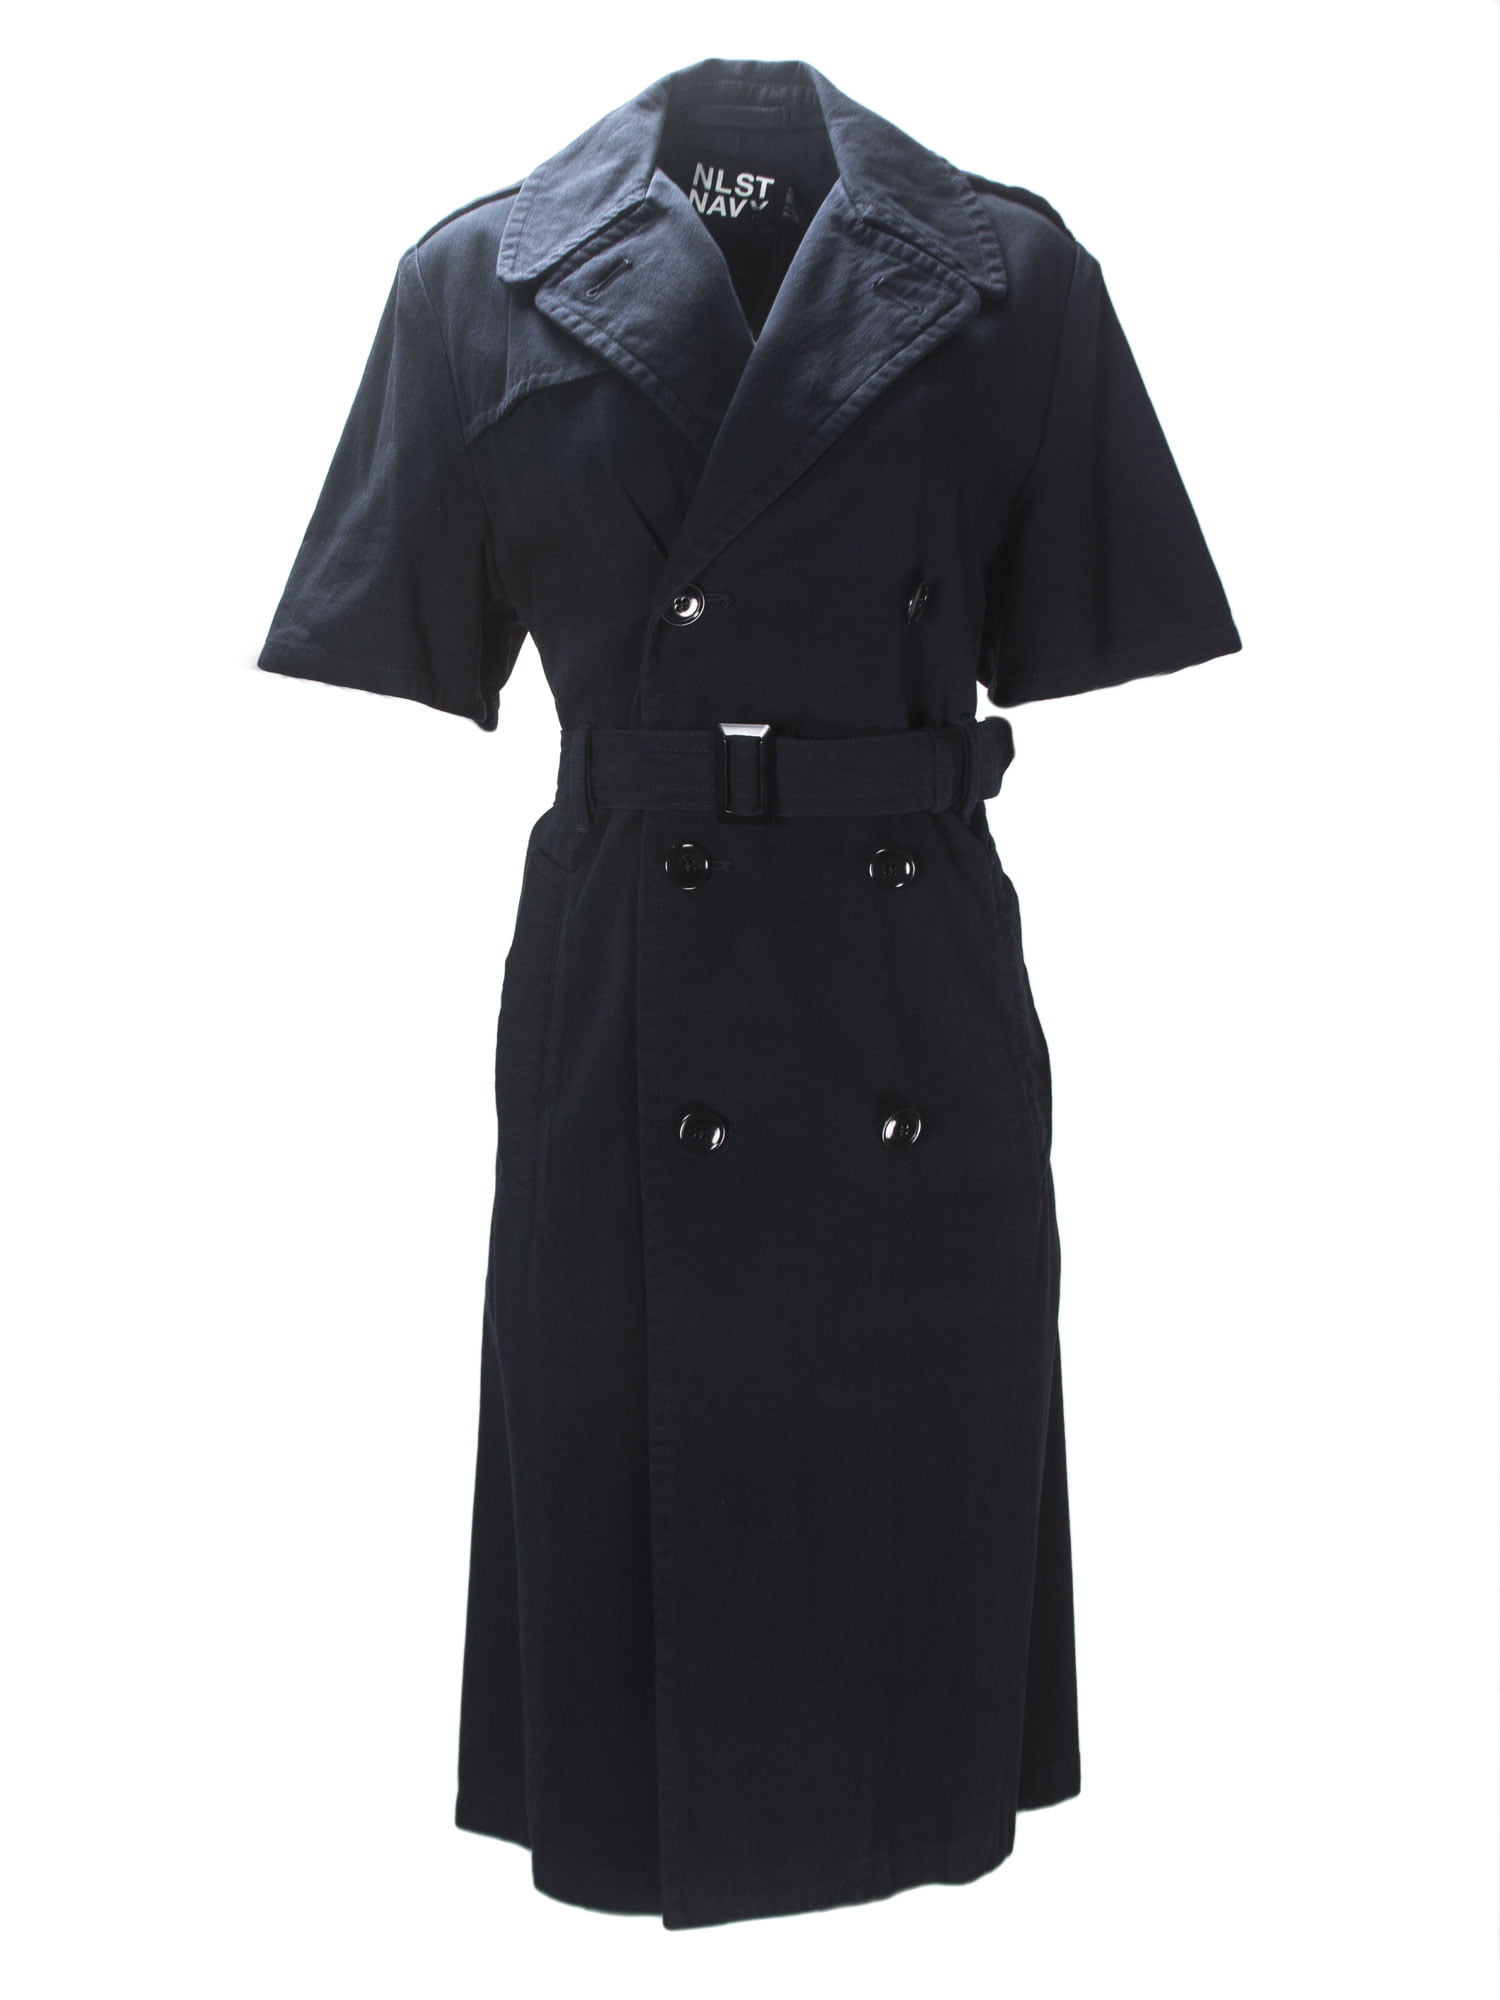 NLST Navy - NLST Navy Women's Short Sleeve Trench Coat - Walmart.com ...